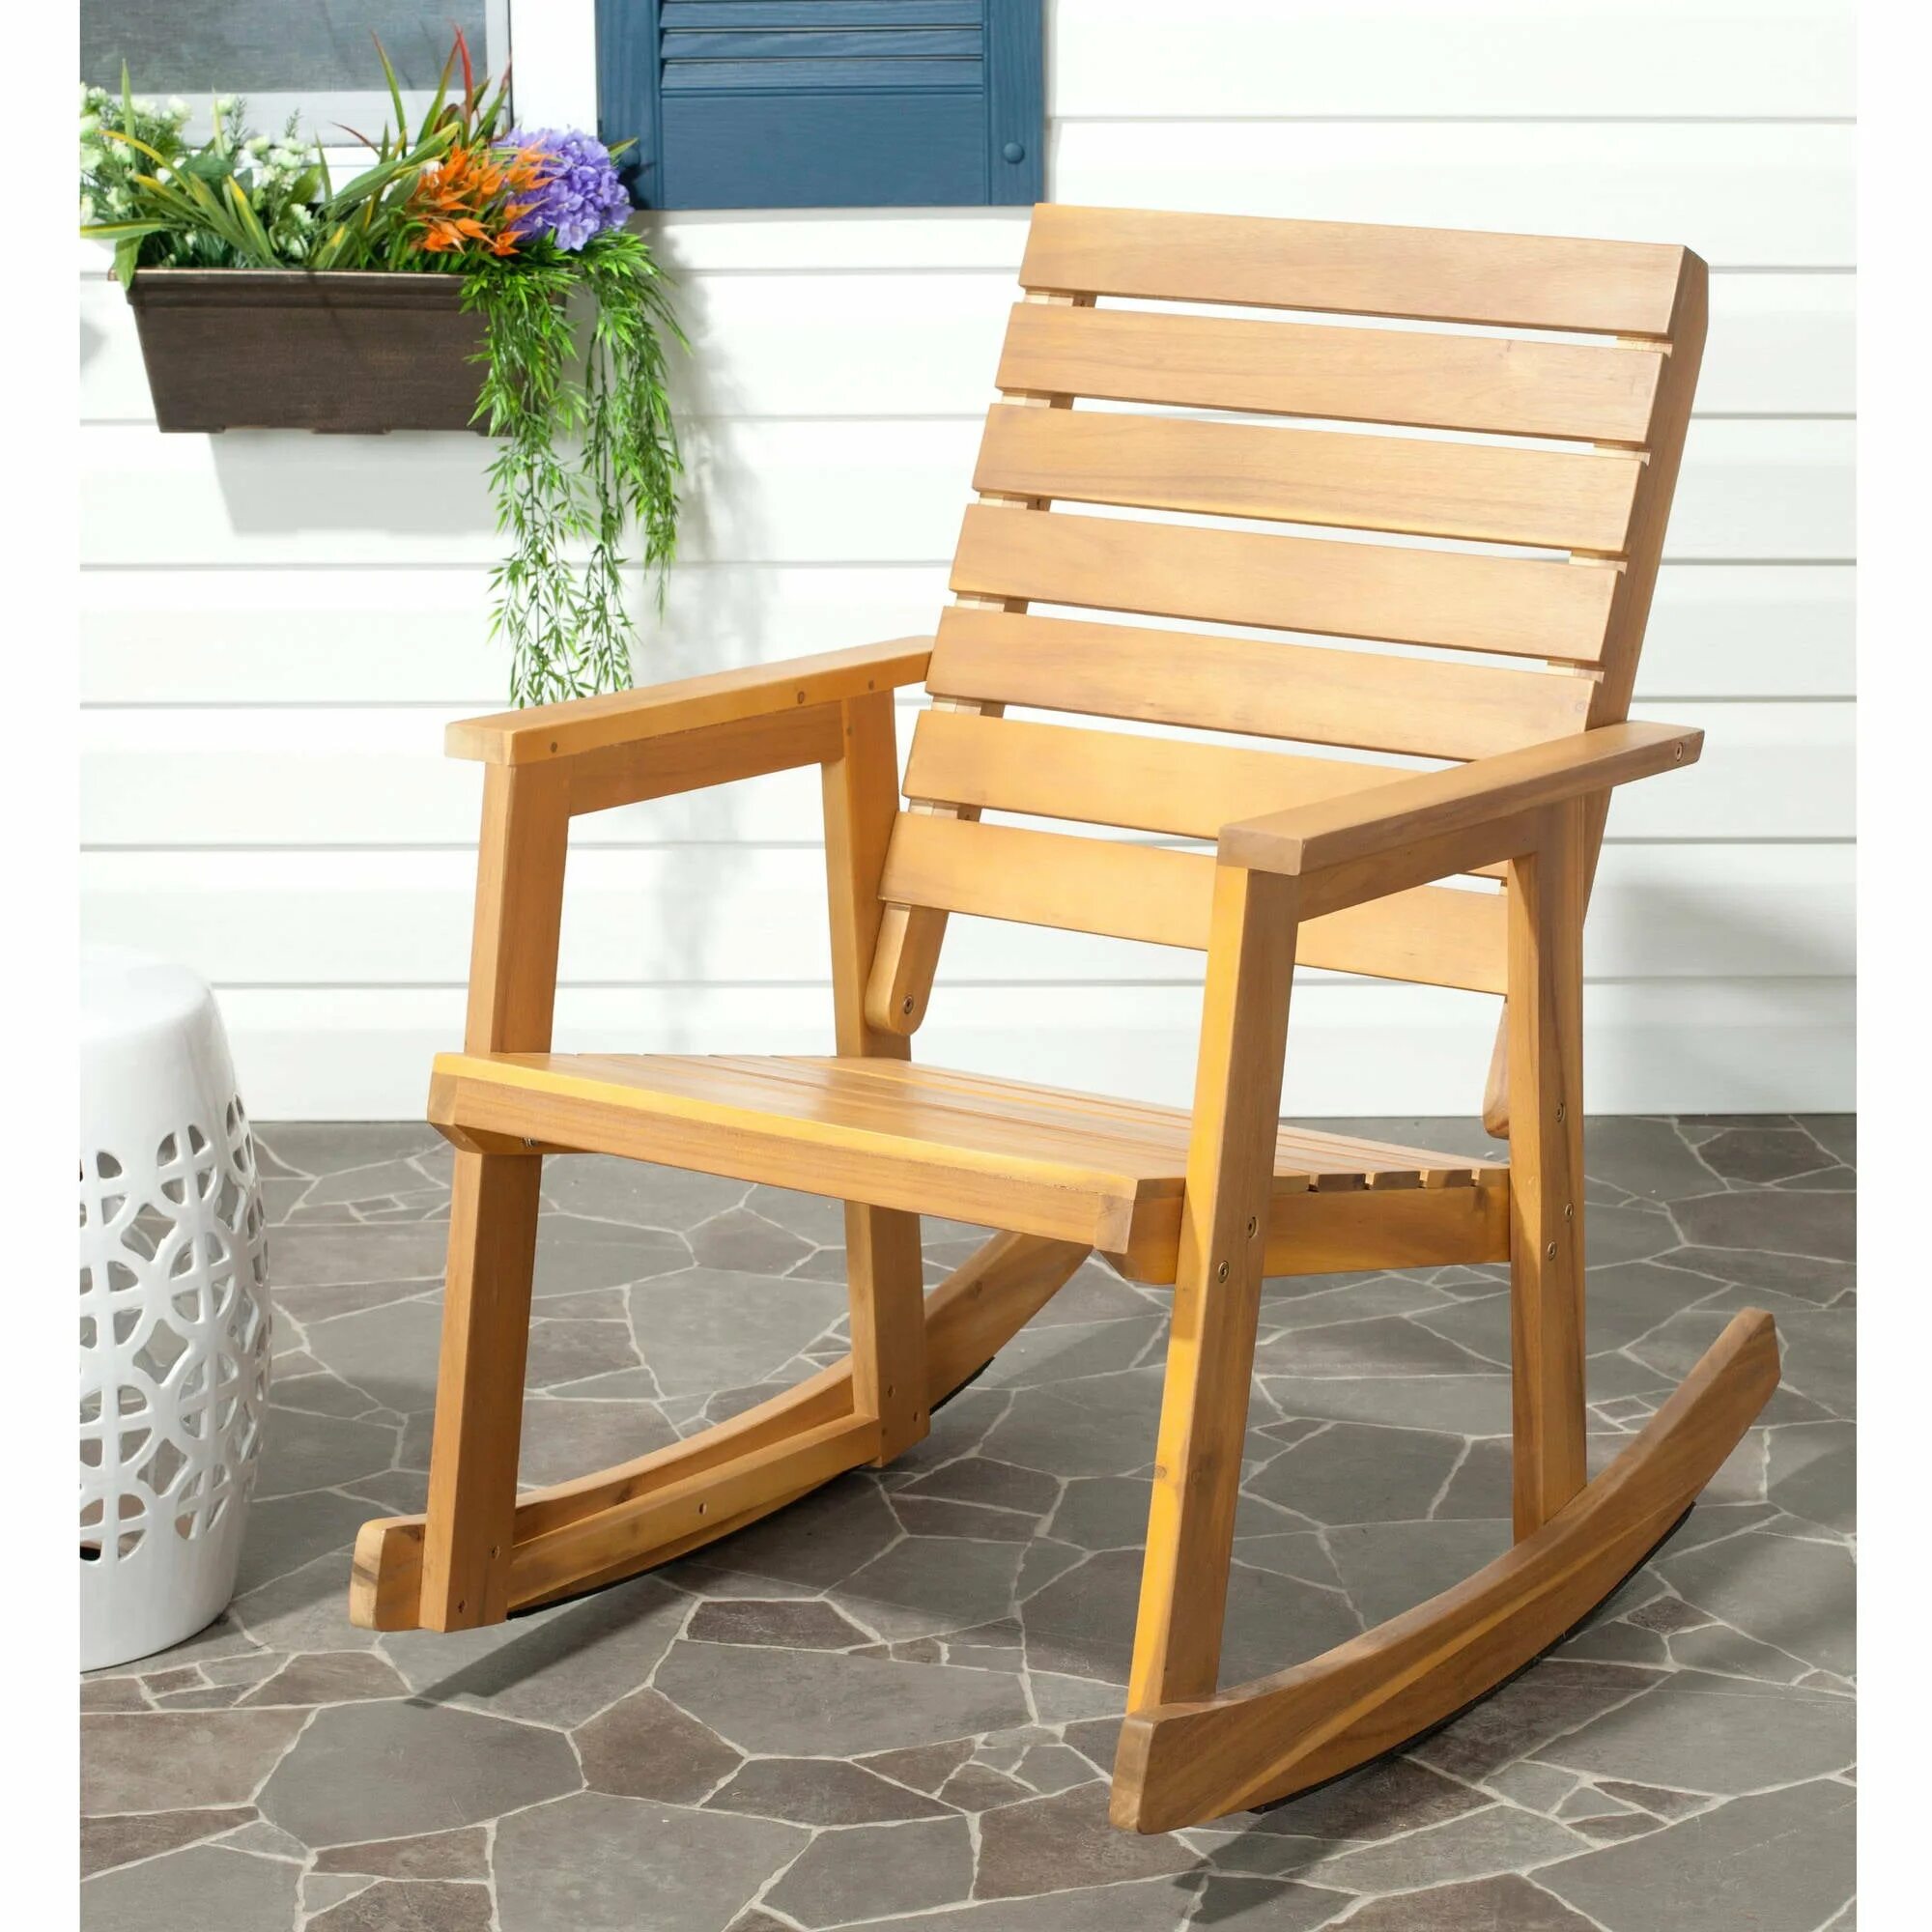 Wooden chair. Rocking Chair kpecло качалка. Кресло качалка Jepara. Кресло качалка деревянная. Кресло качалка дерево.